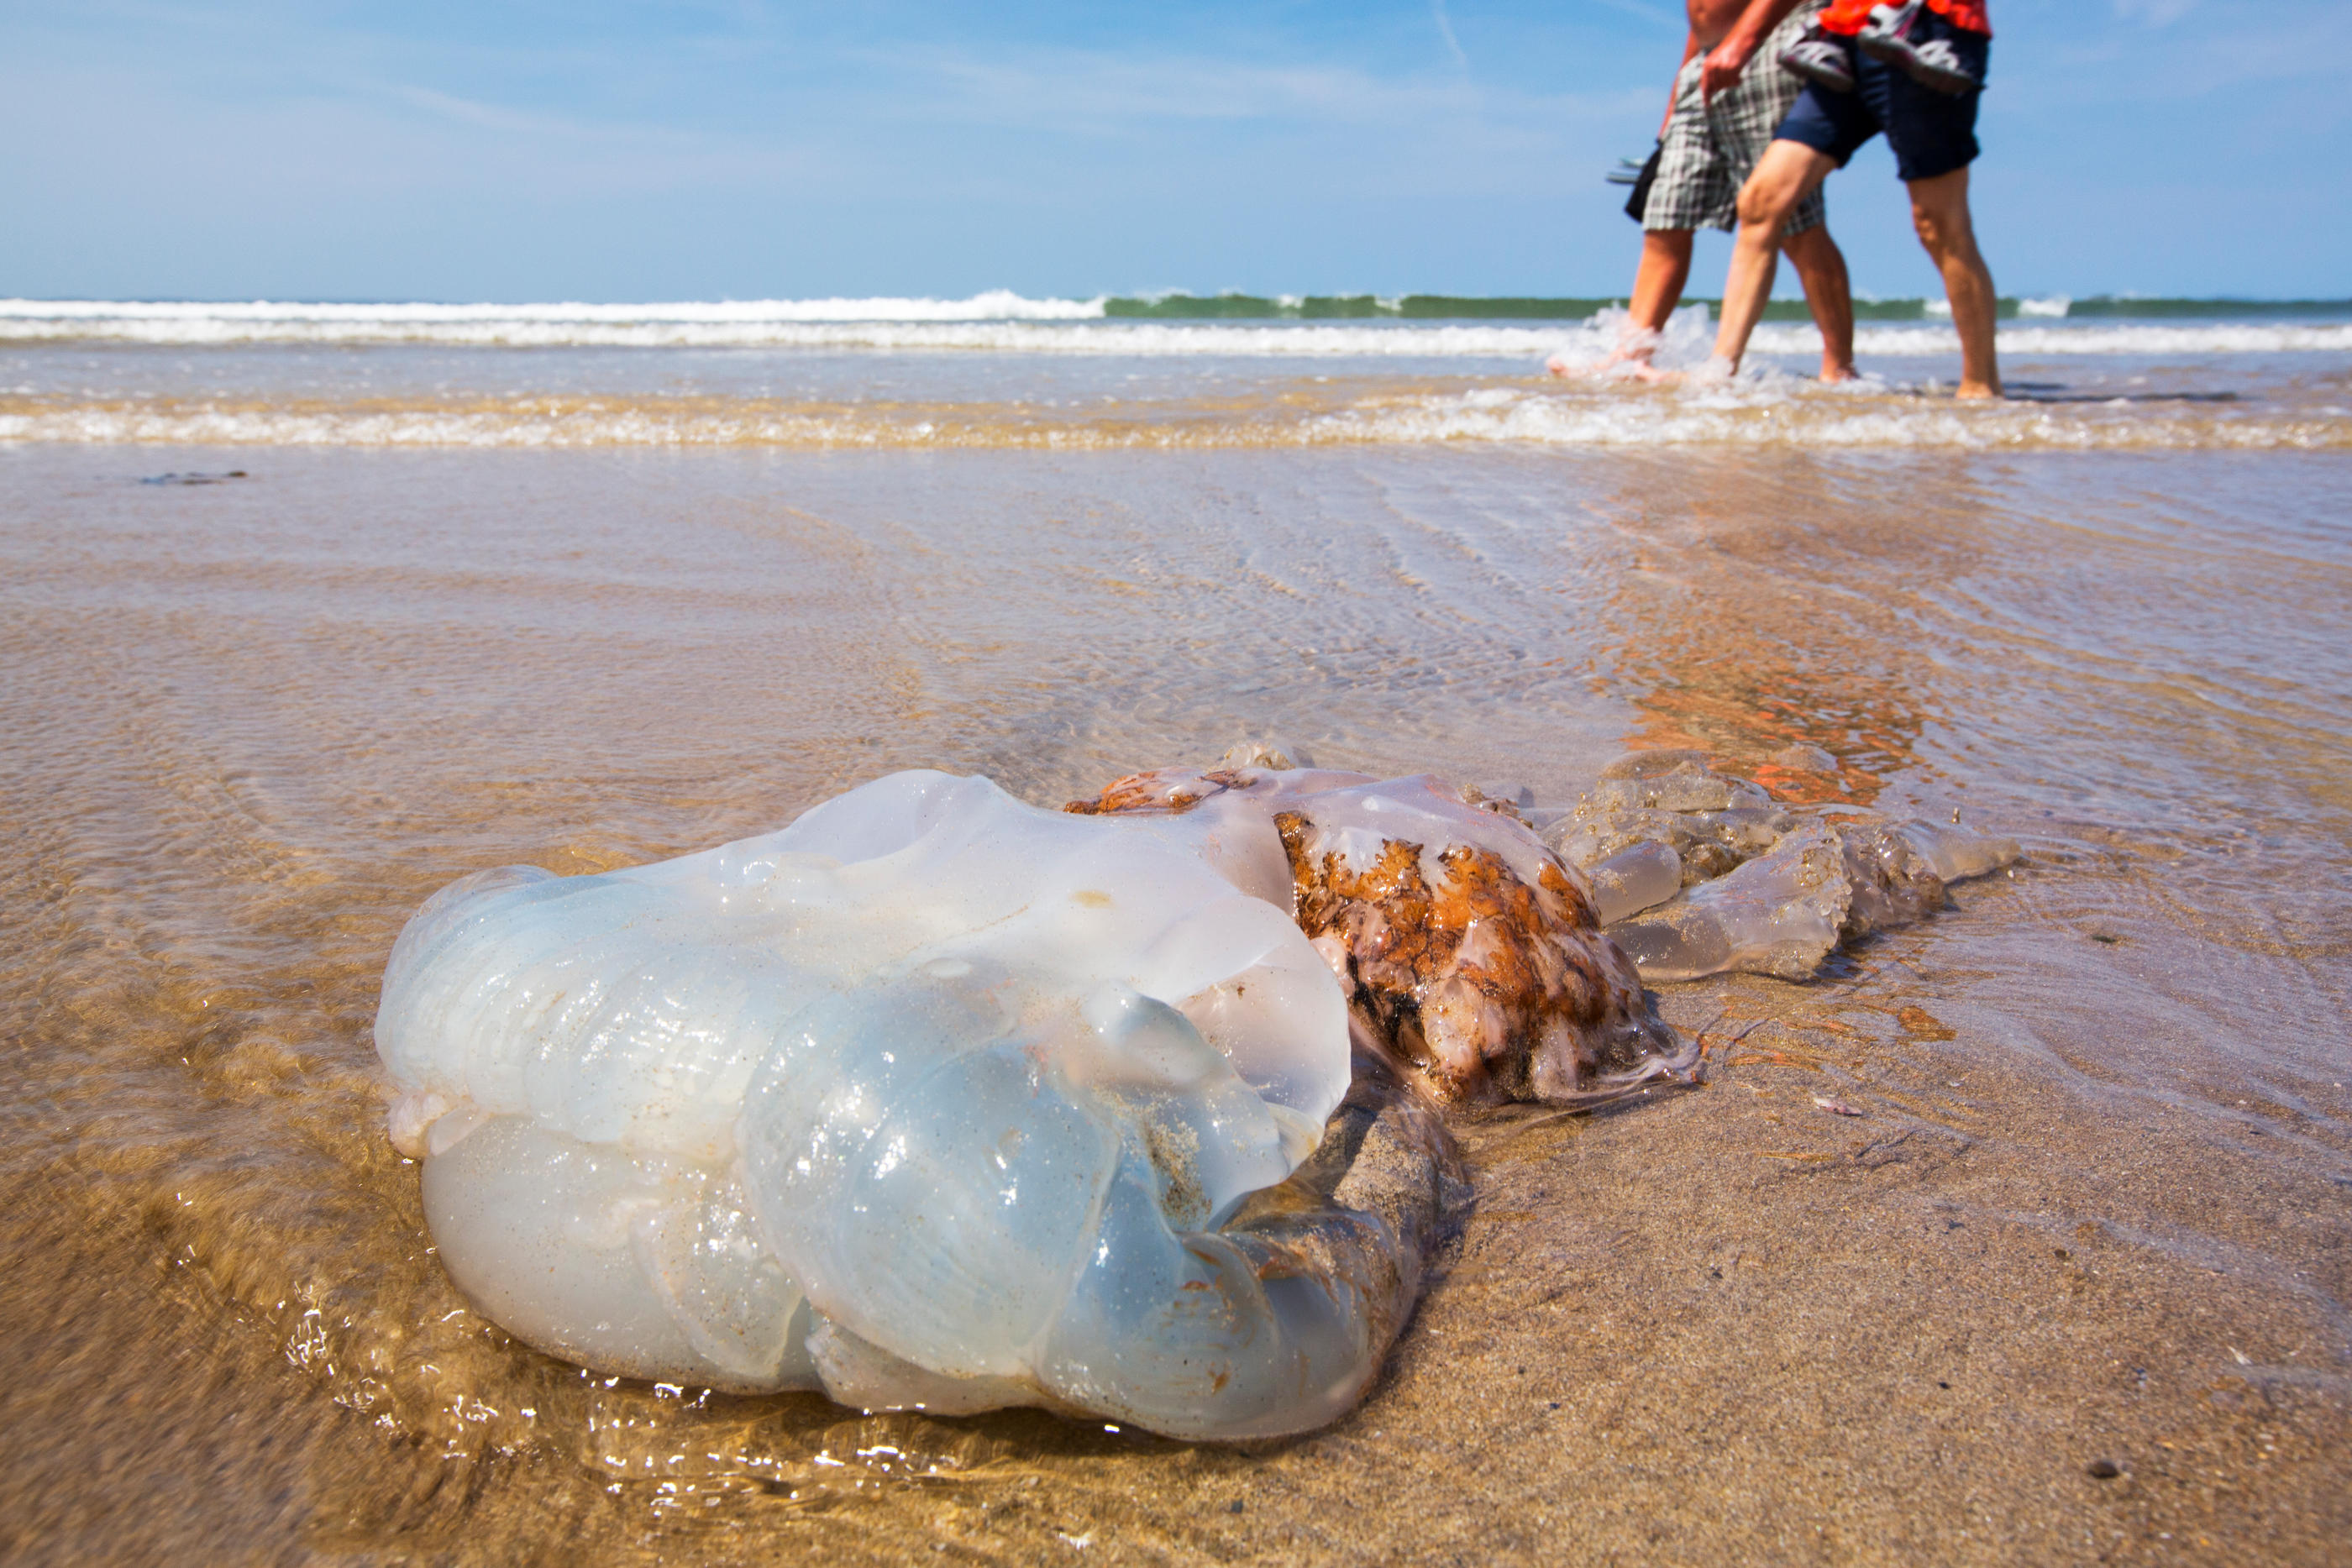 L'apparition de ces méduses en grand nombre sur les plages de l'Atlantique pourrait être due en partie par la hausse de la température de l'océan. (Illustration) Getty images